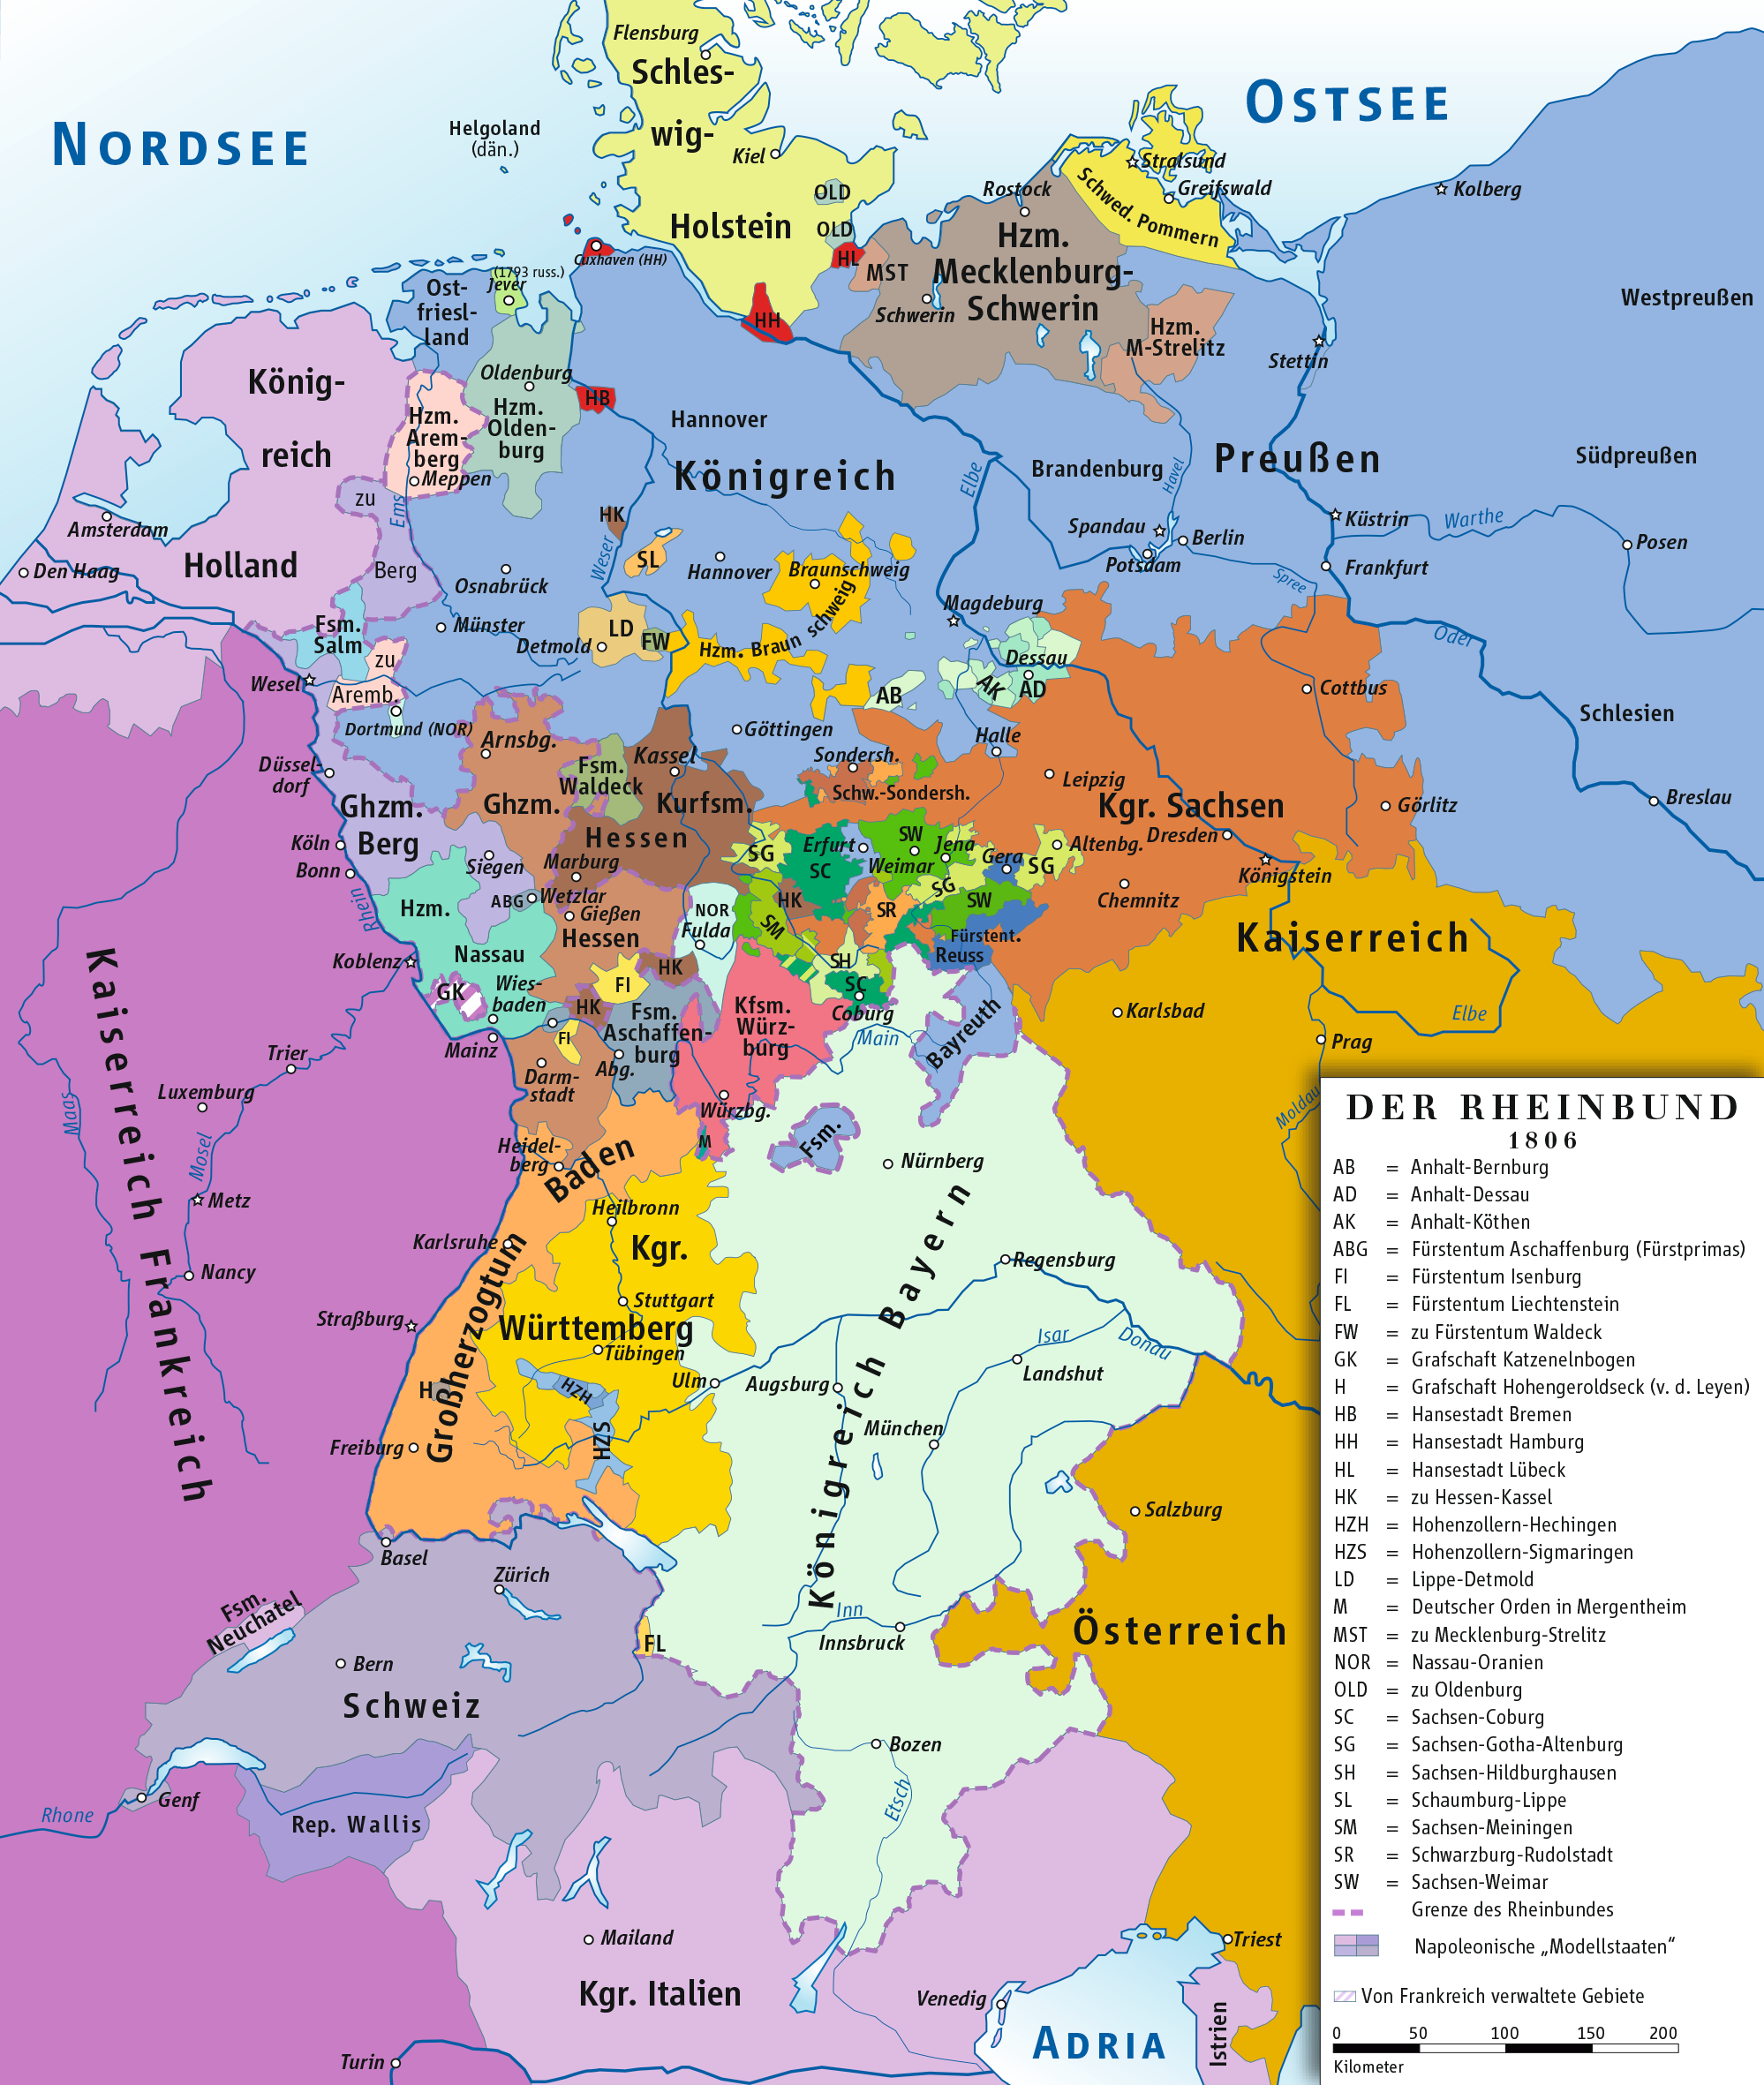 莱茵兰地区地图图片